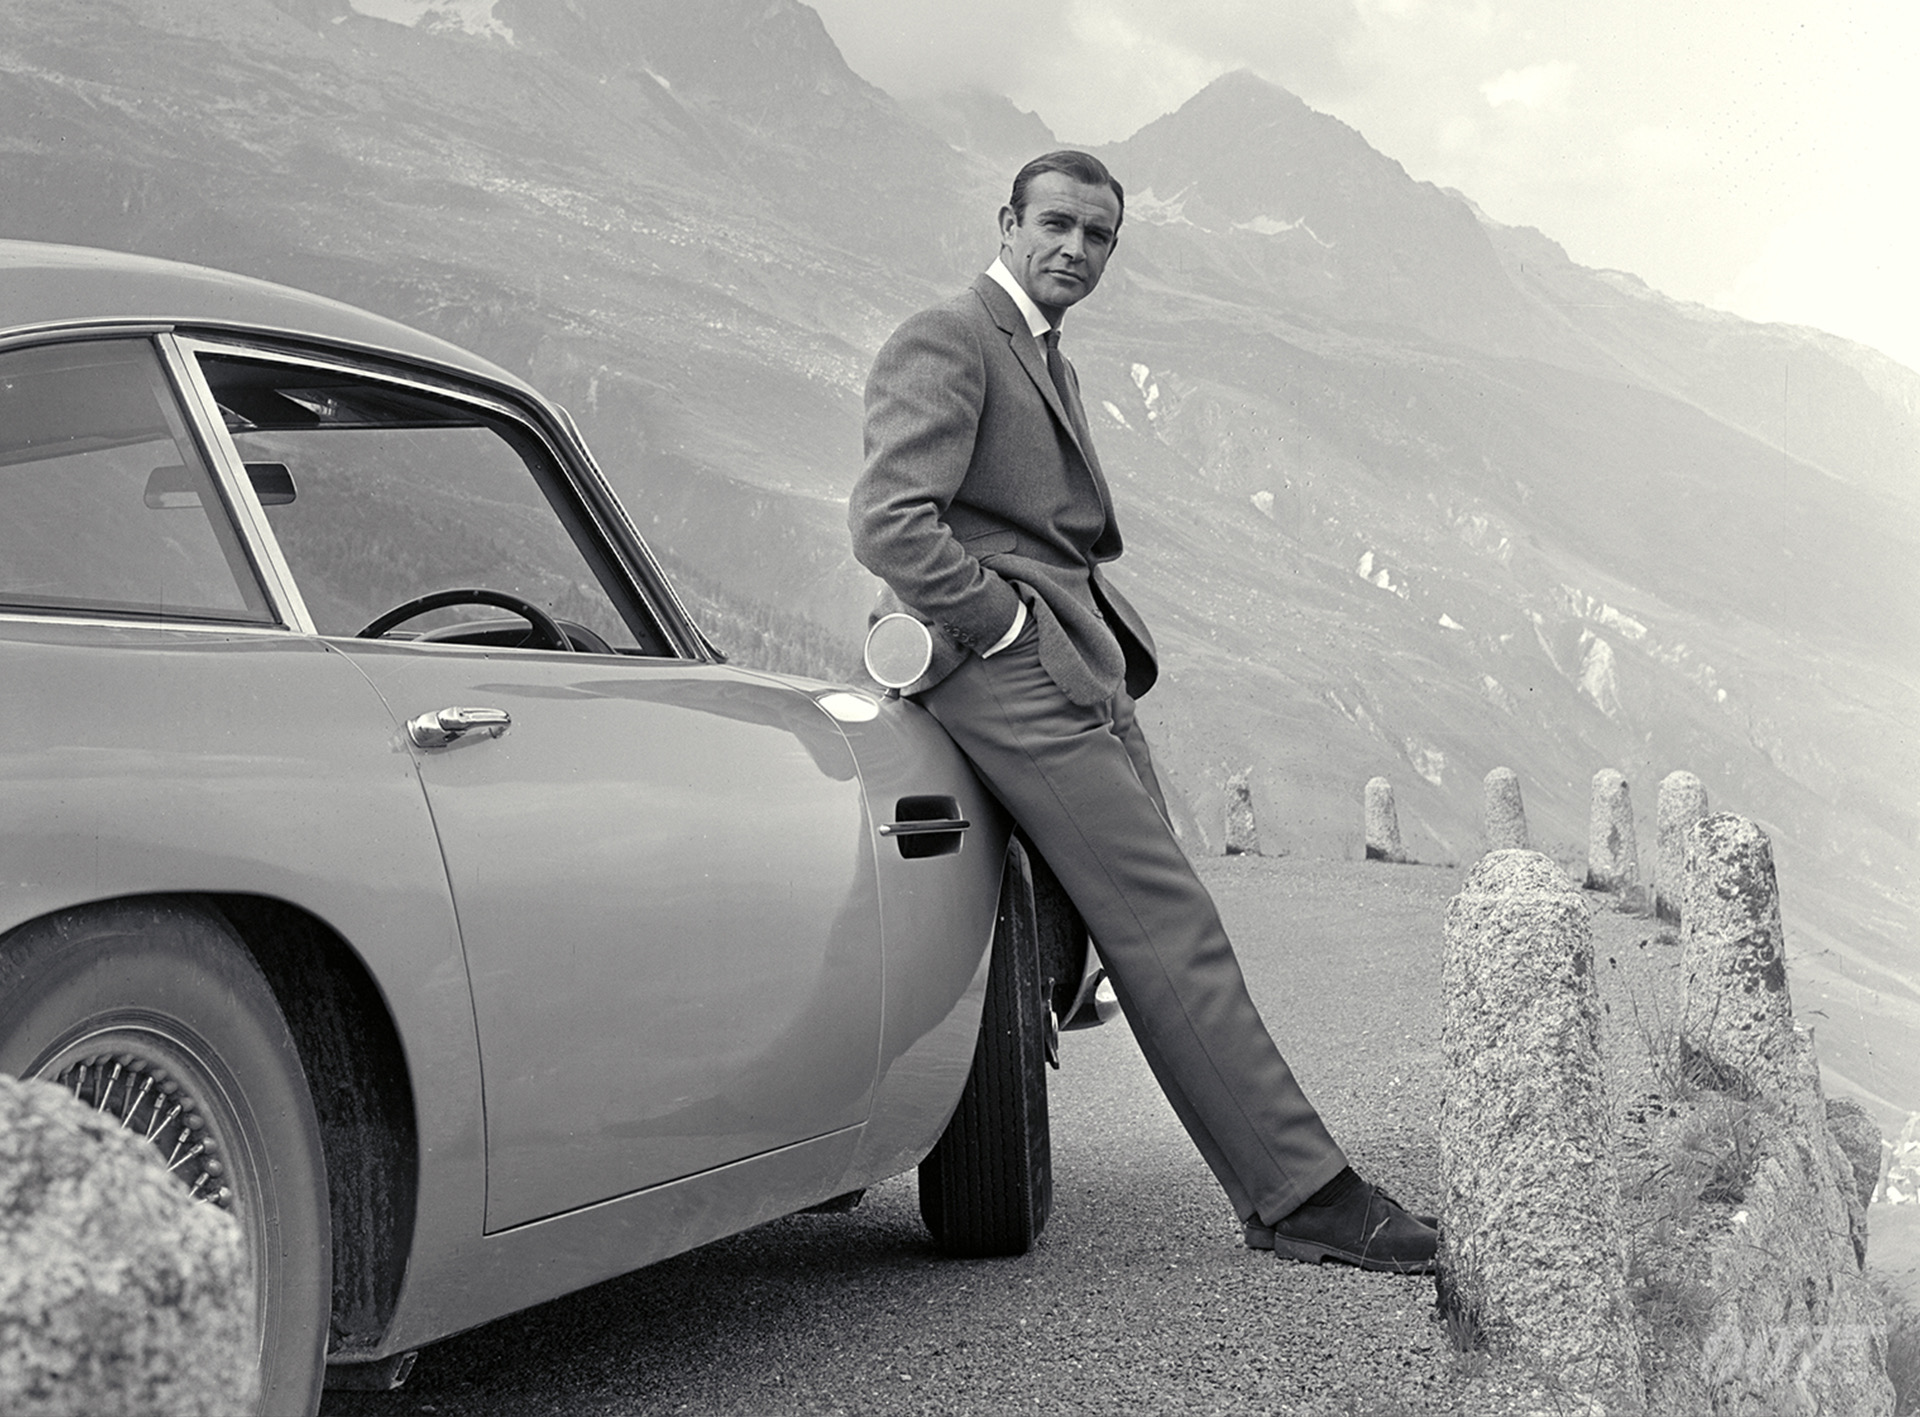 Sean Connery, as James Bond, leaning against an Aston Martin DB5.